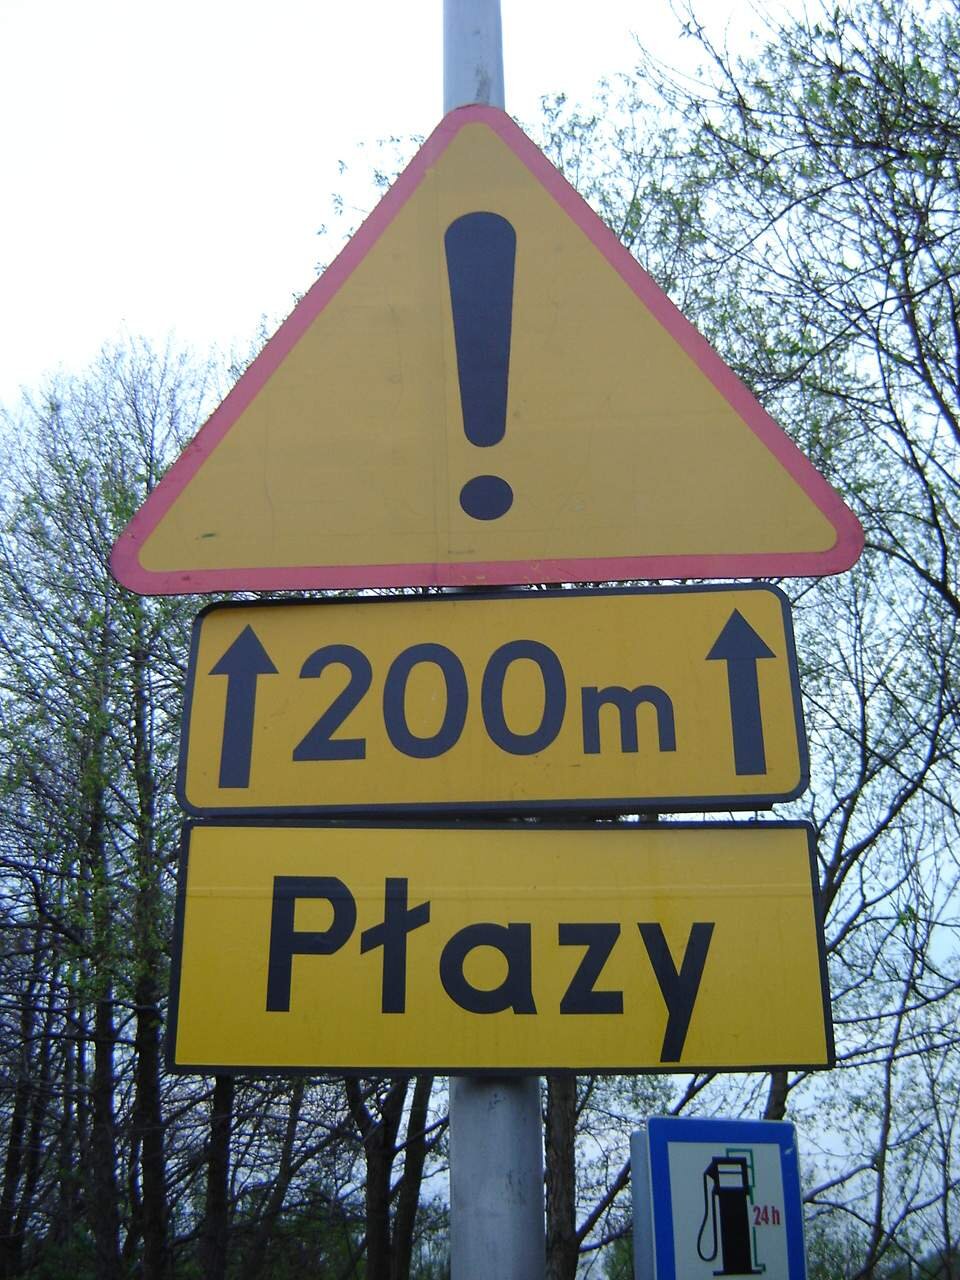 Ilustracja przedstawia znak drogowy. To znak trójkątny z czarnym wykrzyknikiem, pod spodem zaznaczono na długości 200 metrów, poniżej tabliczka z napisem: Płazy. 